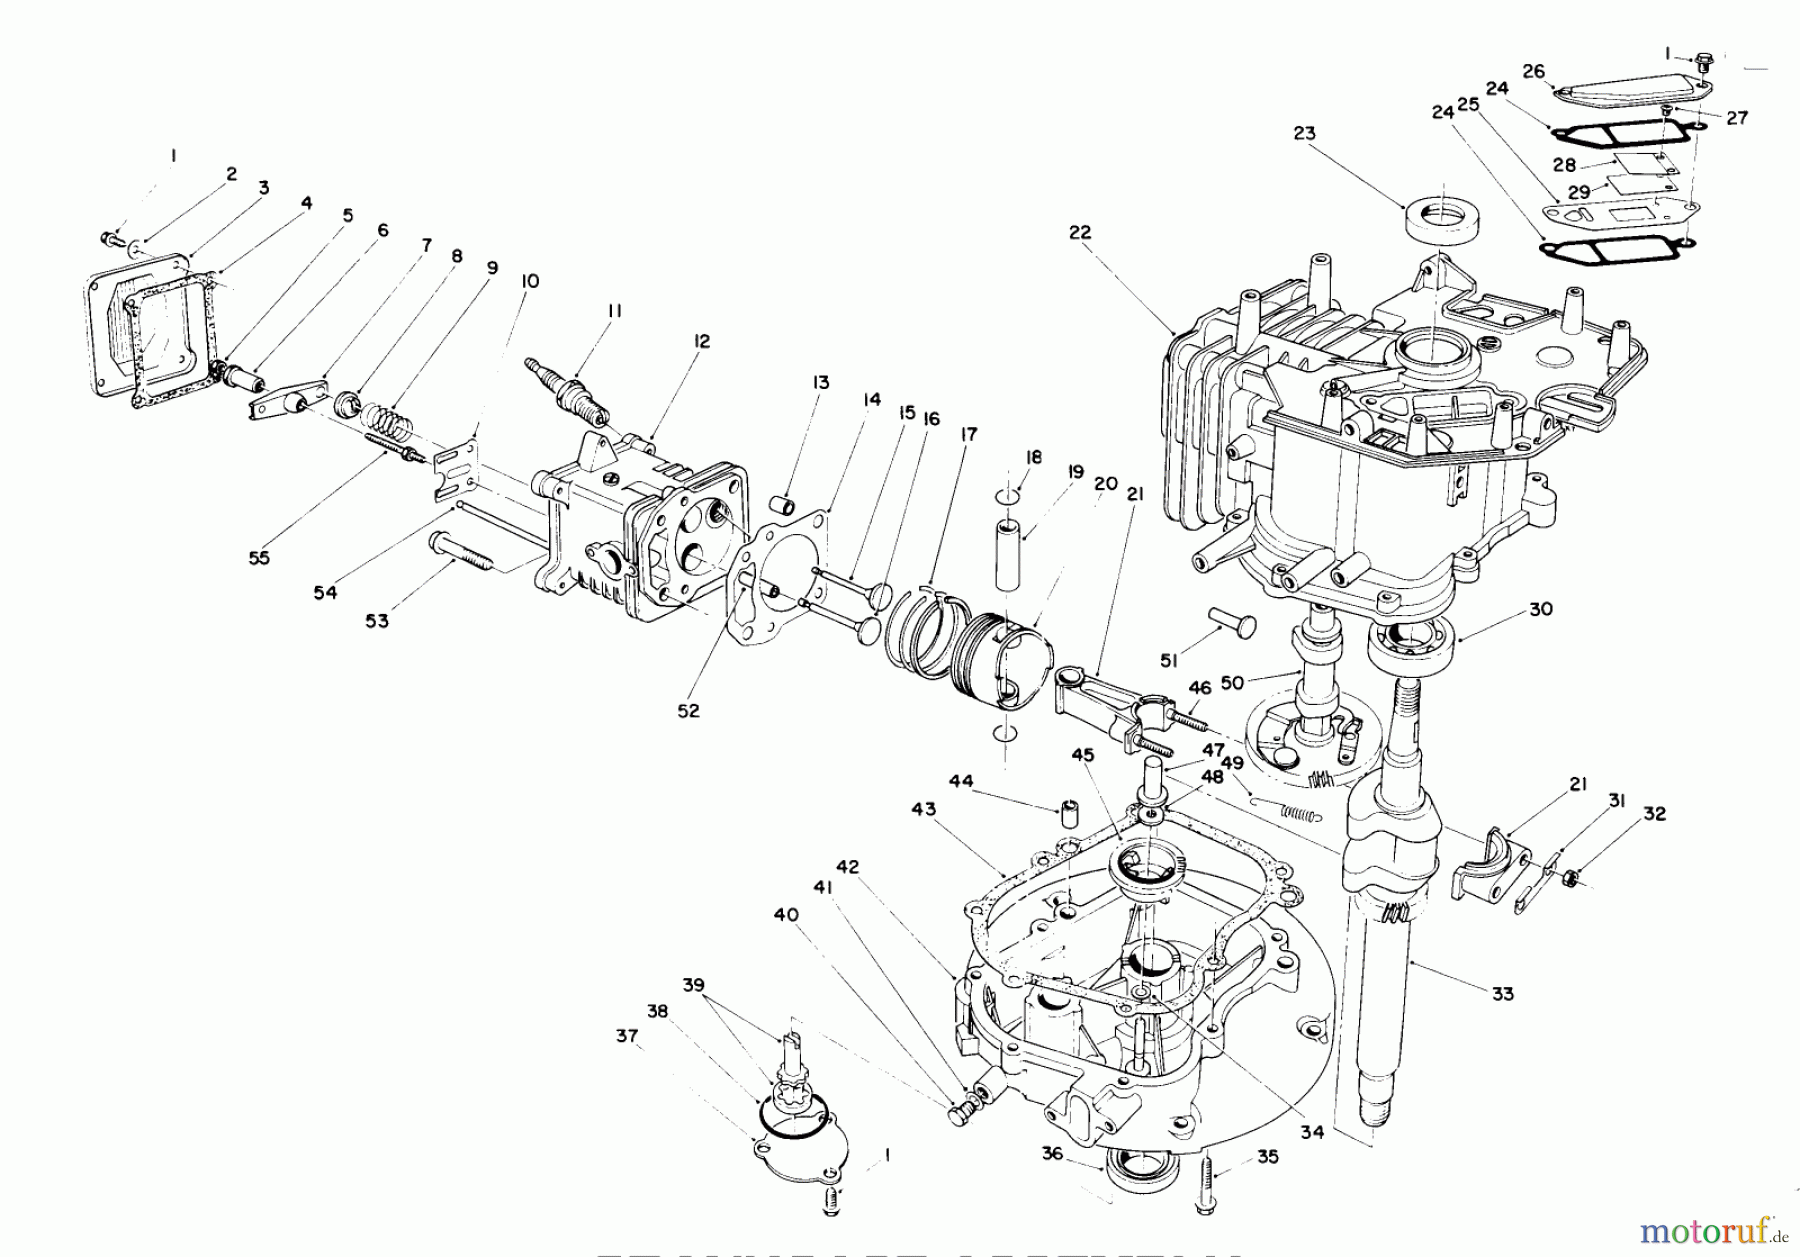  Toro Neu Mowers, Walk-Behind Seite 2 26623 - Toro Lawnmower, 1990 (0000001-0999999) CRANKCASE ASSEMBLY (ENGINE MODEL NO. VMK9-2)